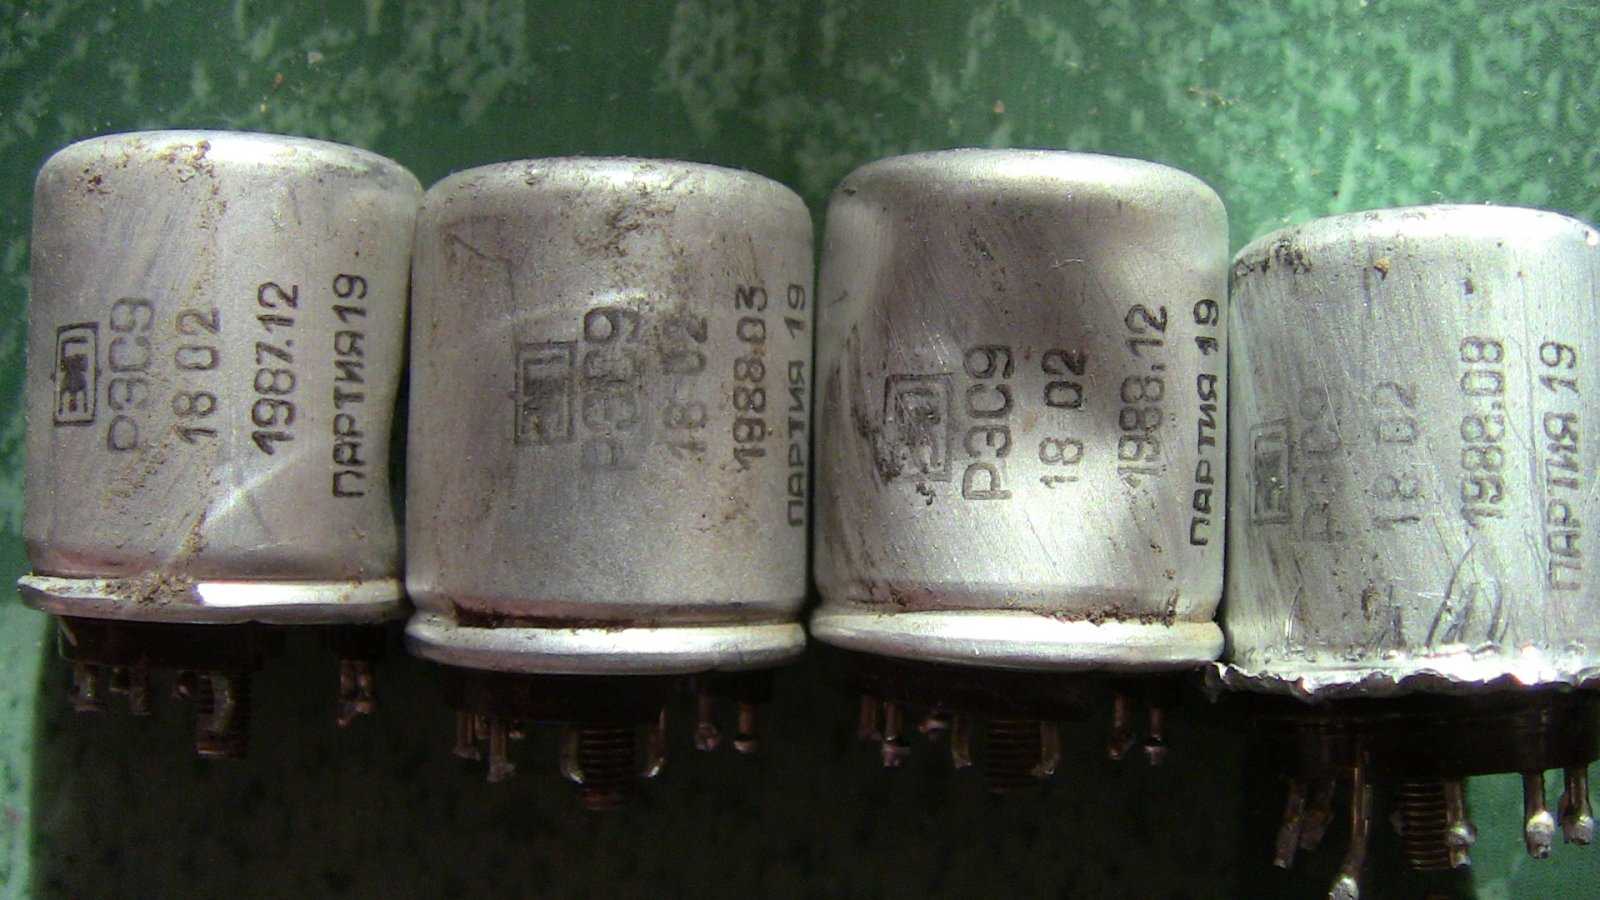 1 31 11 54. Конденсатор к31-11-3. Реле РЭС 8 драгметаллы. К31-10 конденсаторы. Н70 4700 конденсатор.